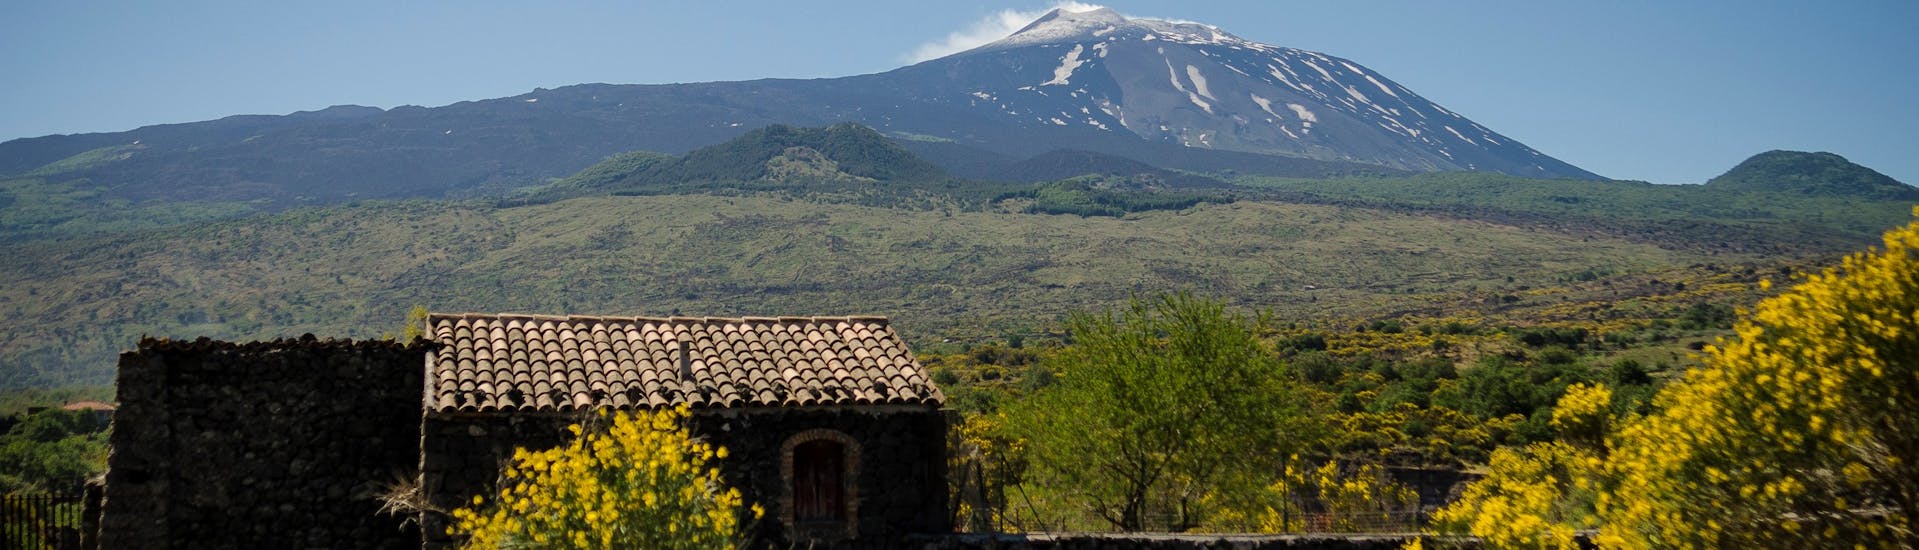 Una casa sul versante nord dell'Etna durante l'Escursione all'Etna, Randazzo e alle Gole dell'Alcantara con SAT Excursion Taormina.